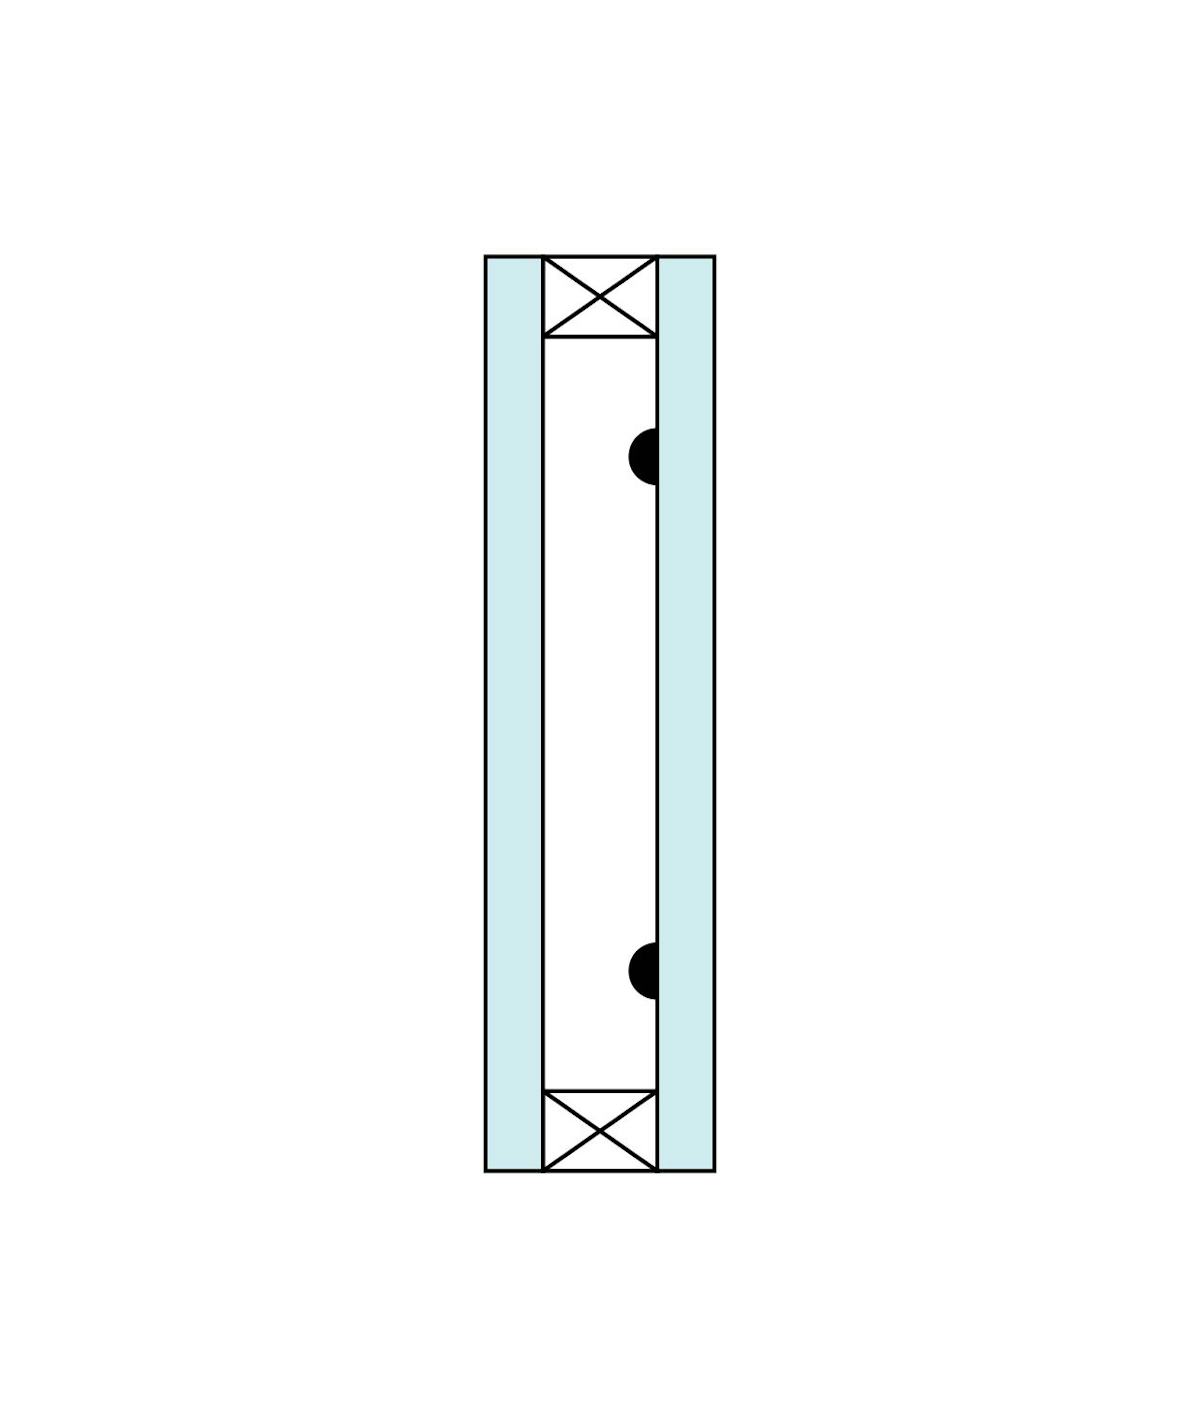 ステンドグラスのペアガラスを制作する場合の描線 - 片面のみ描線 (空気層側)